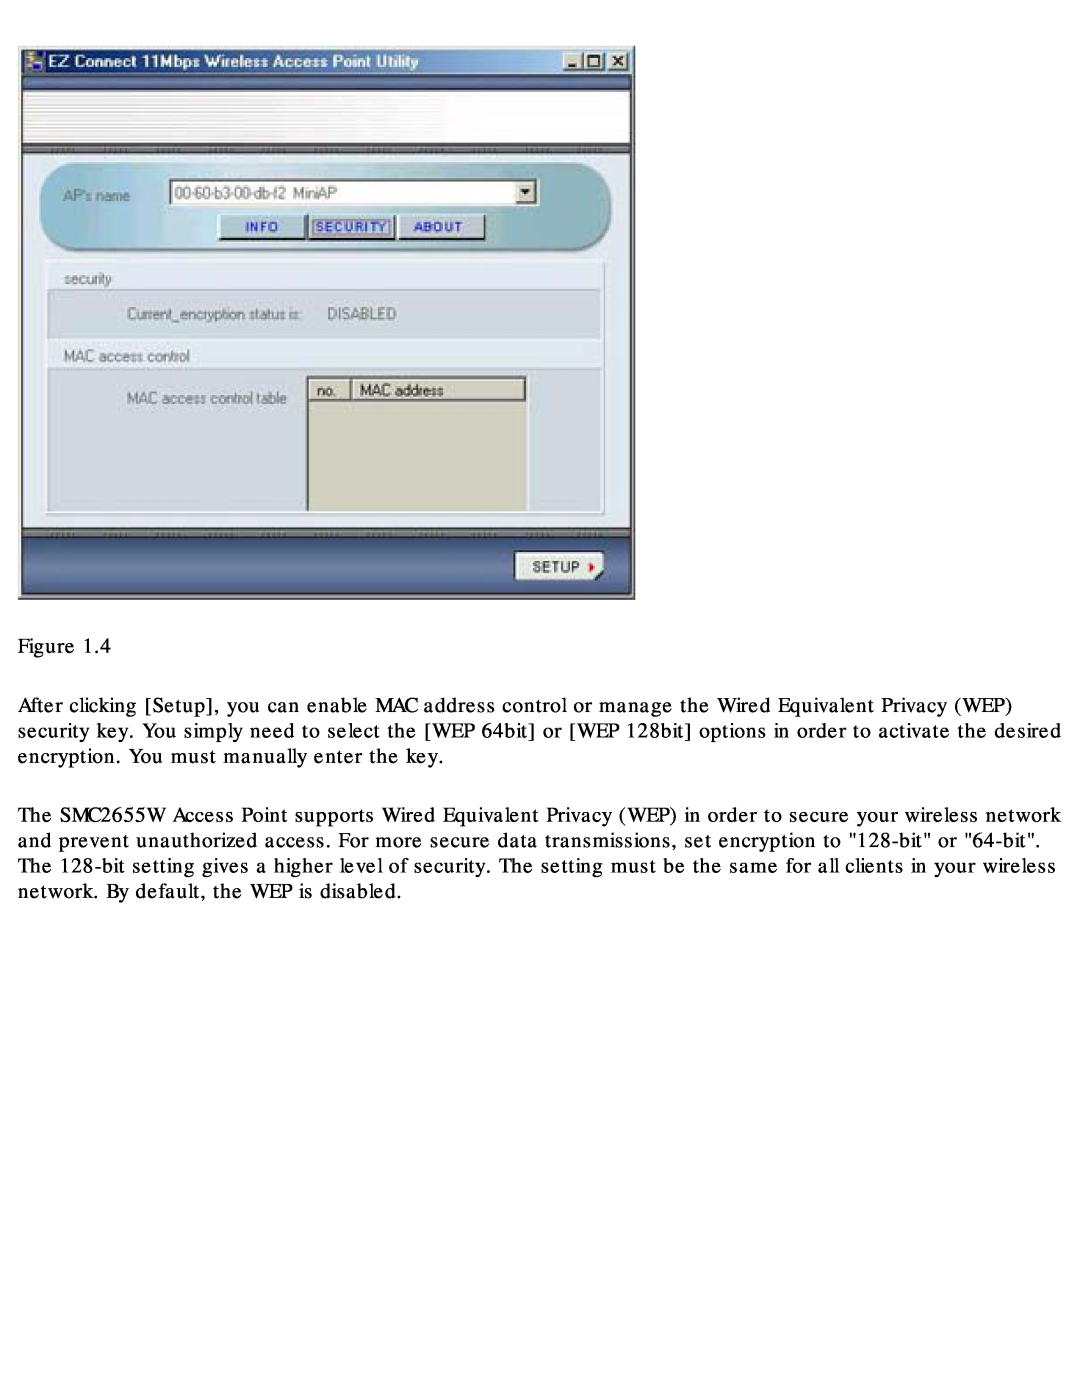 SMC Networks SMC2655W warranty 